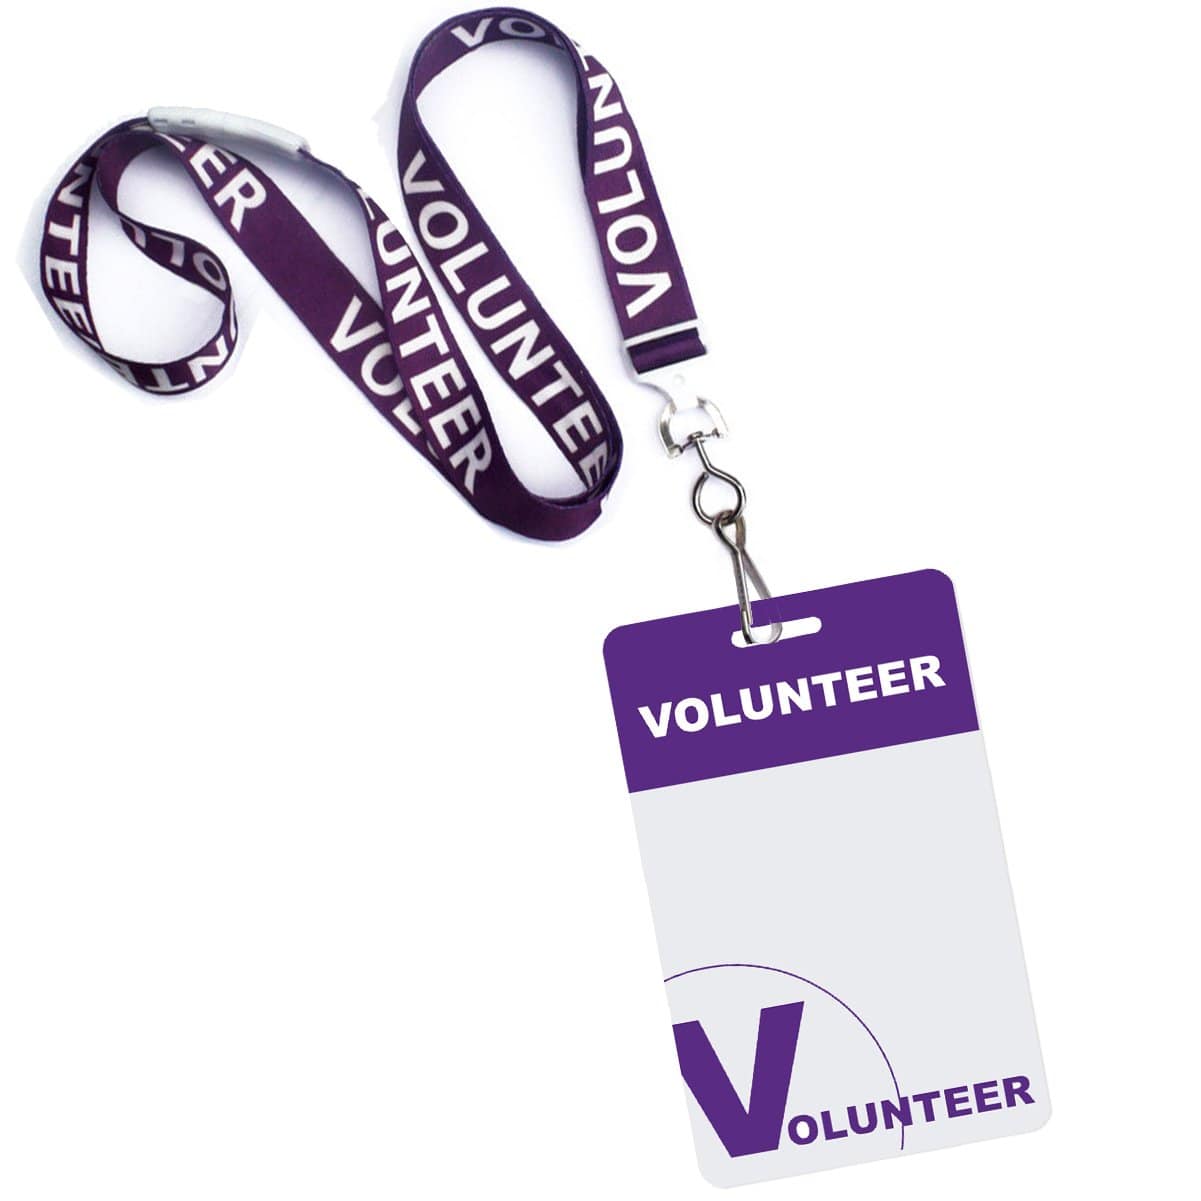 10 Pack - Volunteer Lanyard with Badge Set - Pre-Printed Volunteer Design - Dual Sided, Purple SPID-9930-PURPLE-Q10